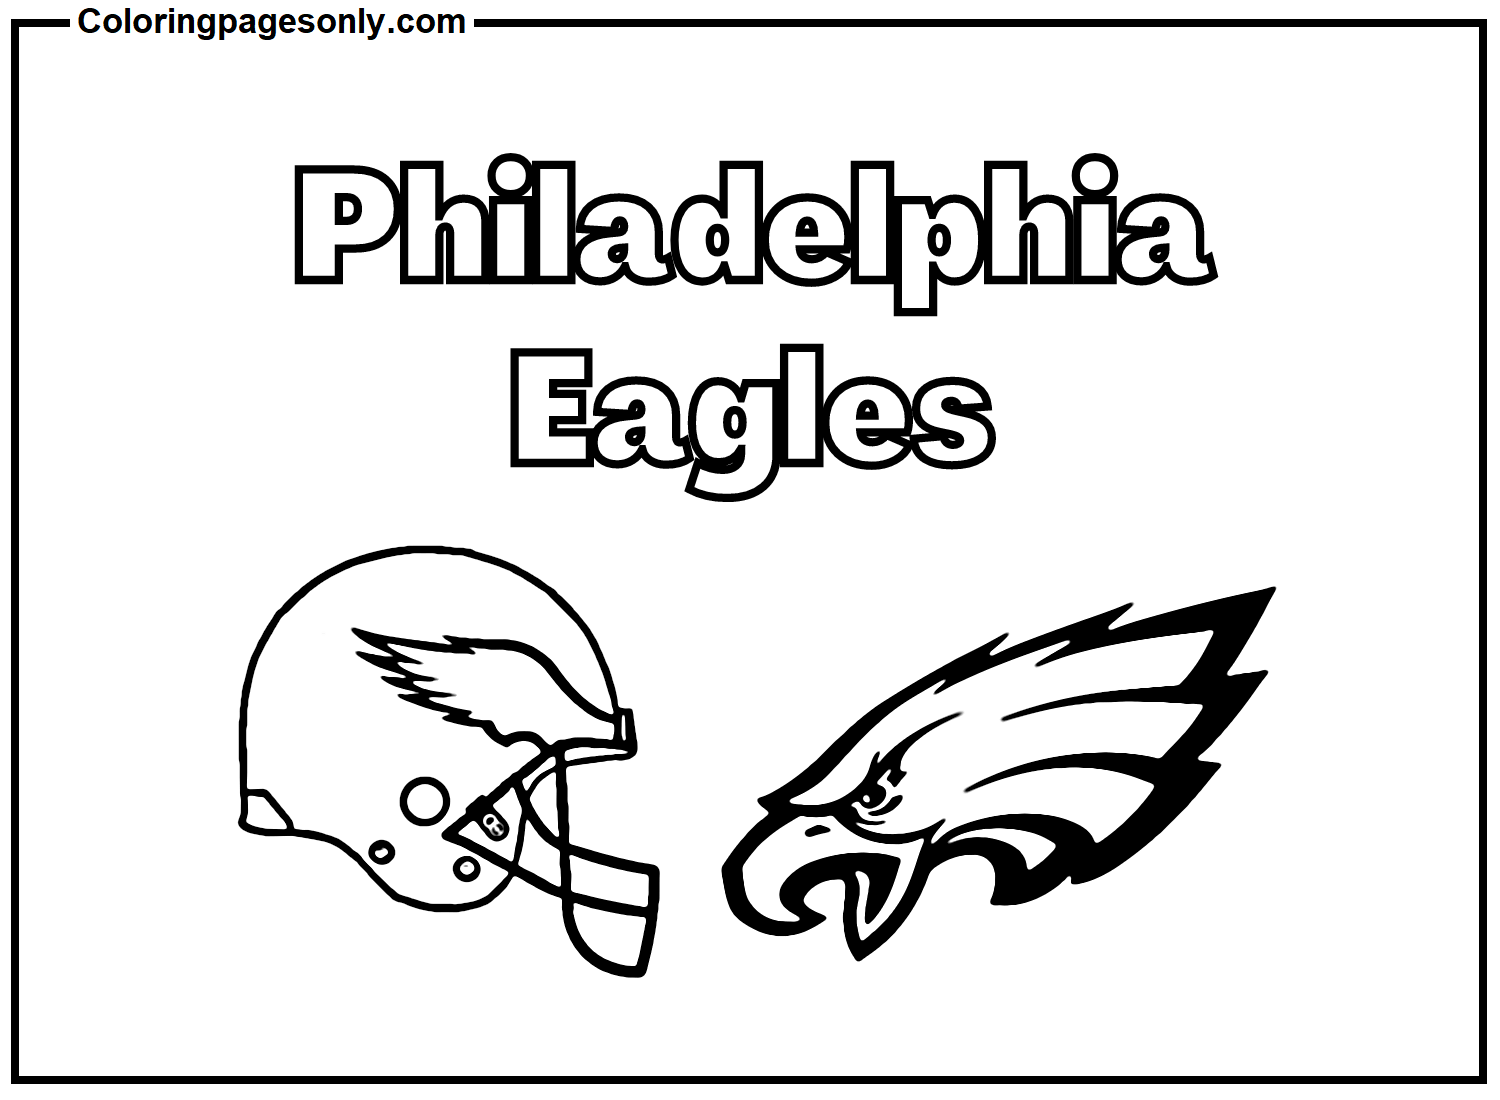 Philadelphia Eagles Team from Philadelphia Eagles